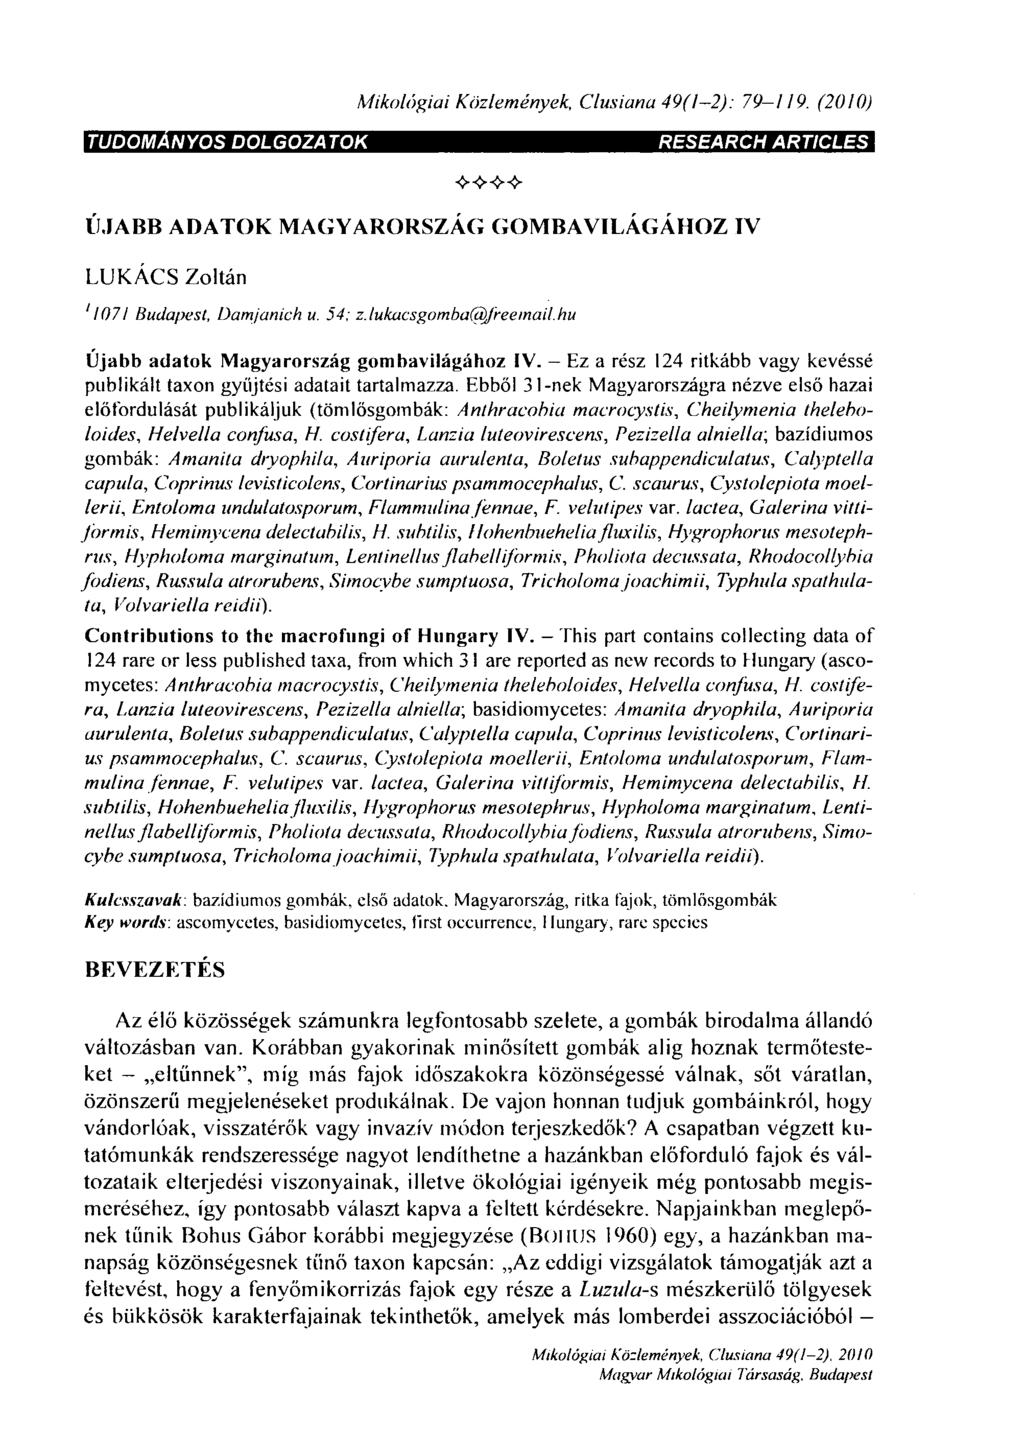 Mikológiái Közlemények, Clusiana 49(1-2): 79-127. (2010) TUDOMÁNYOS DOLGOZA TOK RESEARCH ARTICLES ÚJABB ADATOK MAGYARORSZÁG GOMBAVILÁGÁHOZ IV LUKÁCS Zoltán ' 1071 Budapest, Damjanich u. 54; z.